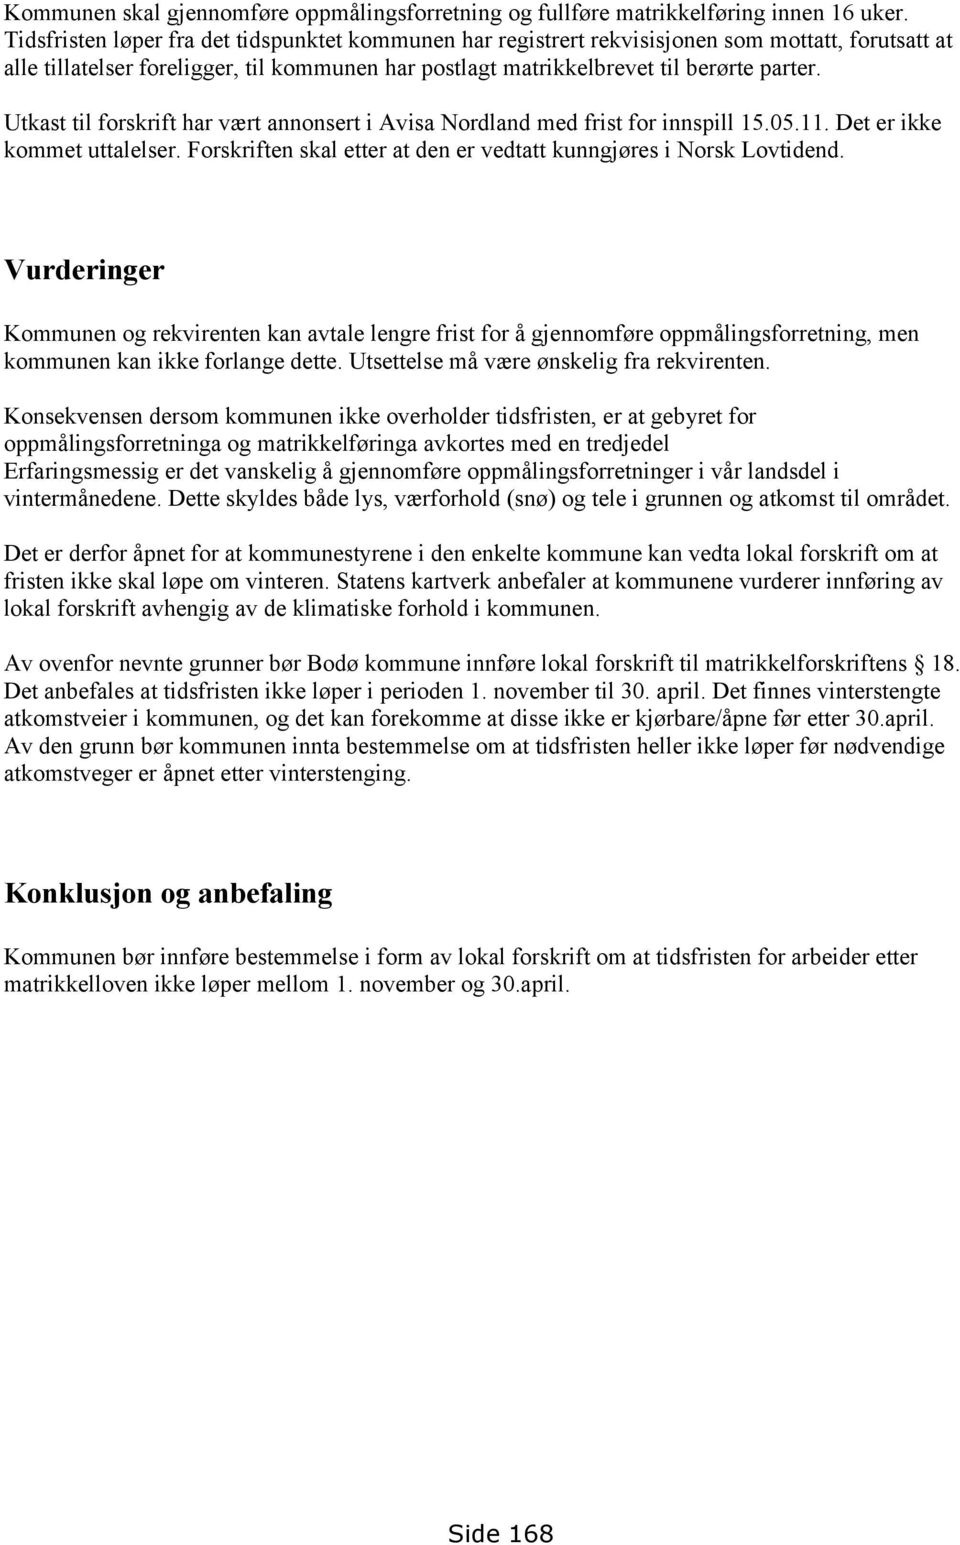 Utkast til forskrift har vært annonsert i Avisa Nordland med frist for innspill 15.05.11. Det er ikke kommet uttalelser. Forskriften skal etter at den er vedtatt kunngjøres i Norsk Lovtidend.